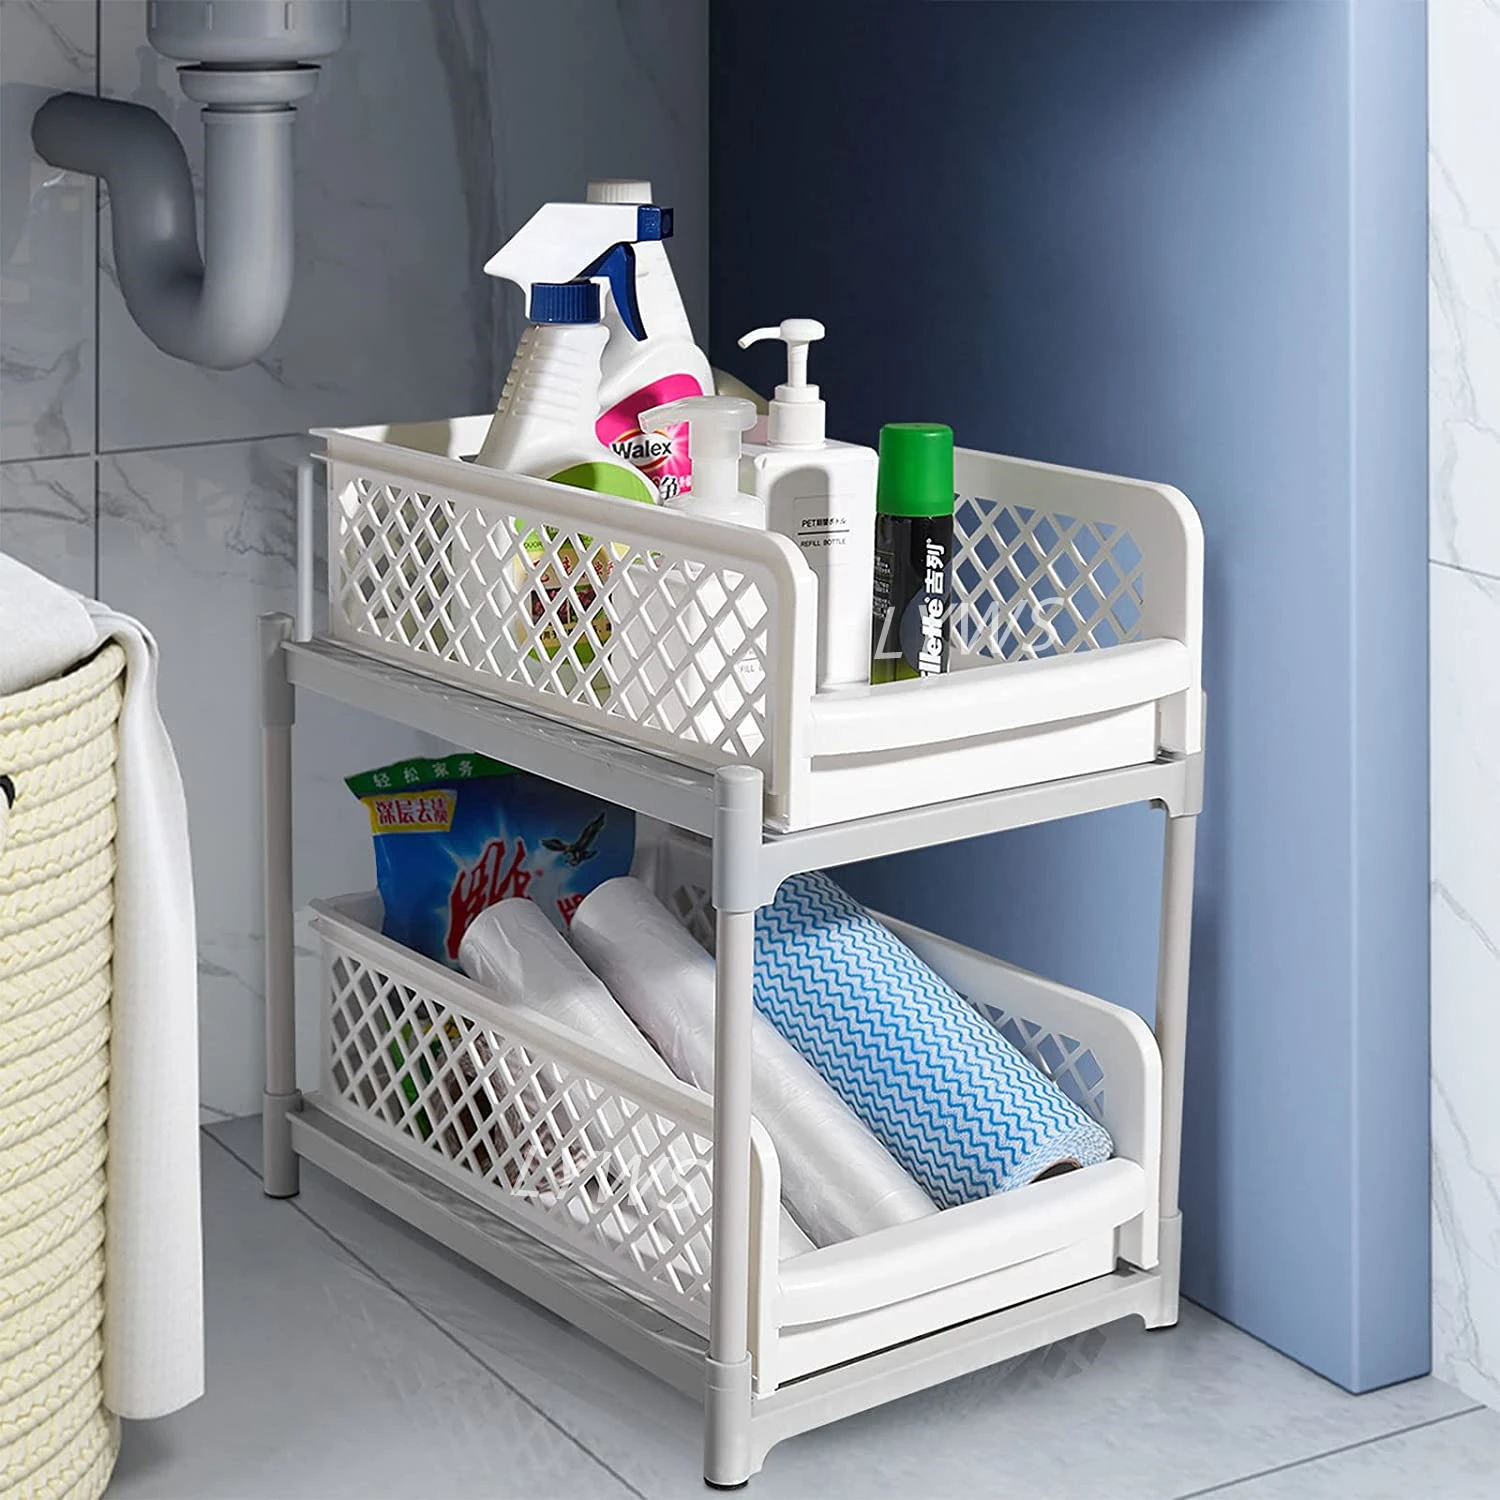 https://ae01.alicdn.com/kf/Sa30121d4ce834c65b164b6ea1db4c5c6N/2-Tier-Drawer-Under-Sink-Organizer-Bathroom-Kitchen-Storage-Racks-Multi-Use-Slide-Out-With-Handles.jpg